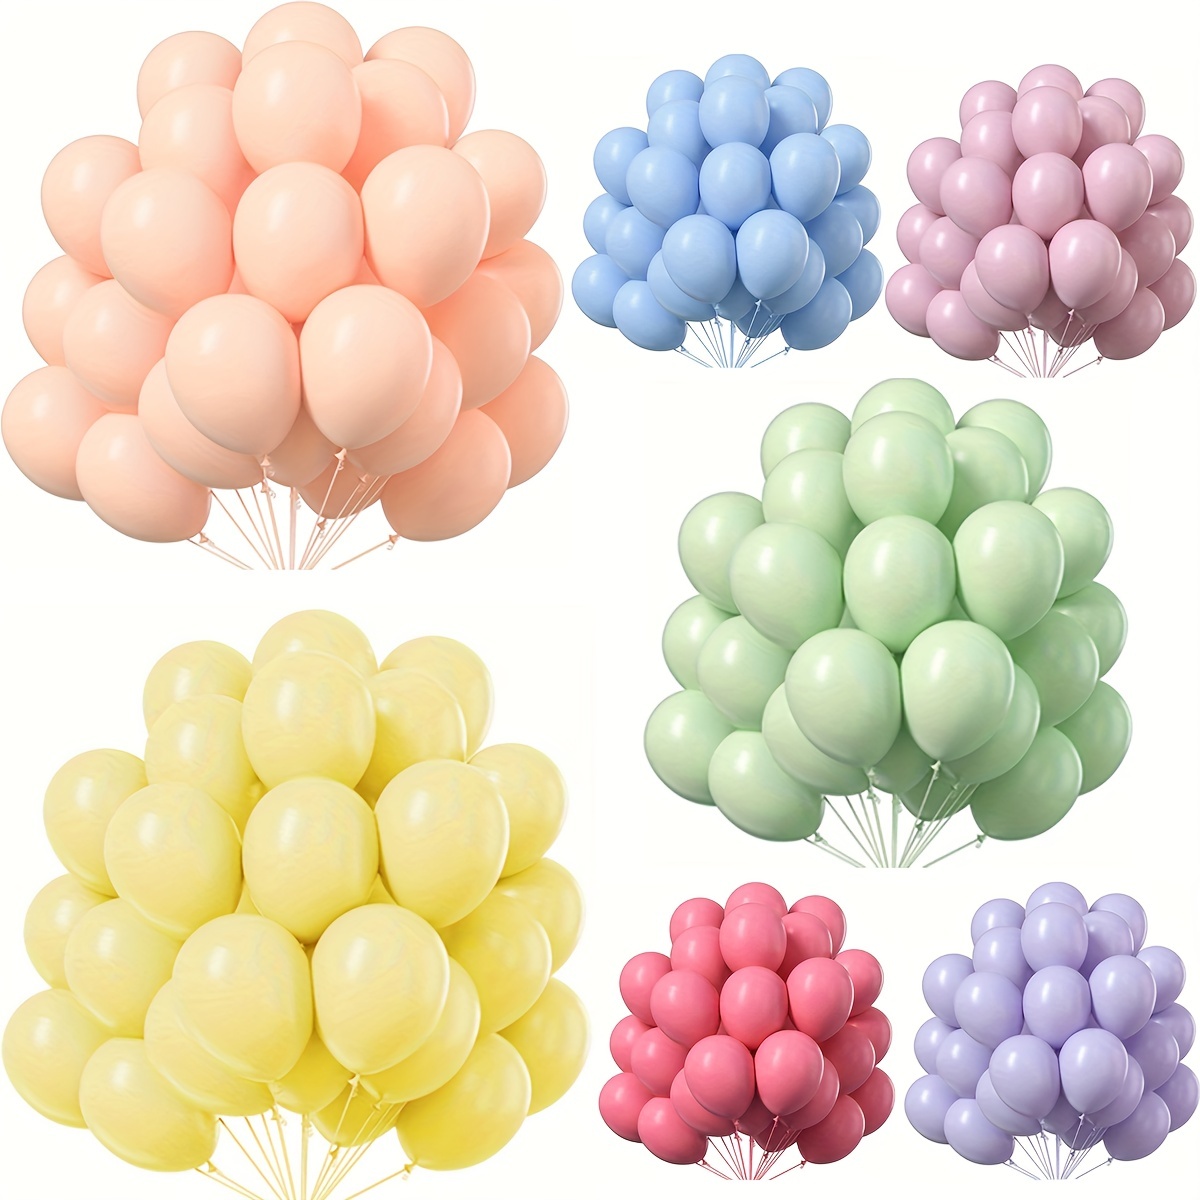 100 globos pastel surtidos de colores y tamaños – Decoraciones de fiesta de  cumpleaños arcoíris – Globos de macarrón en azul, morado, amarillo, verde